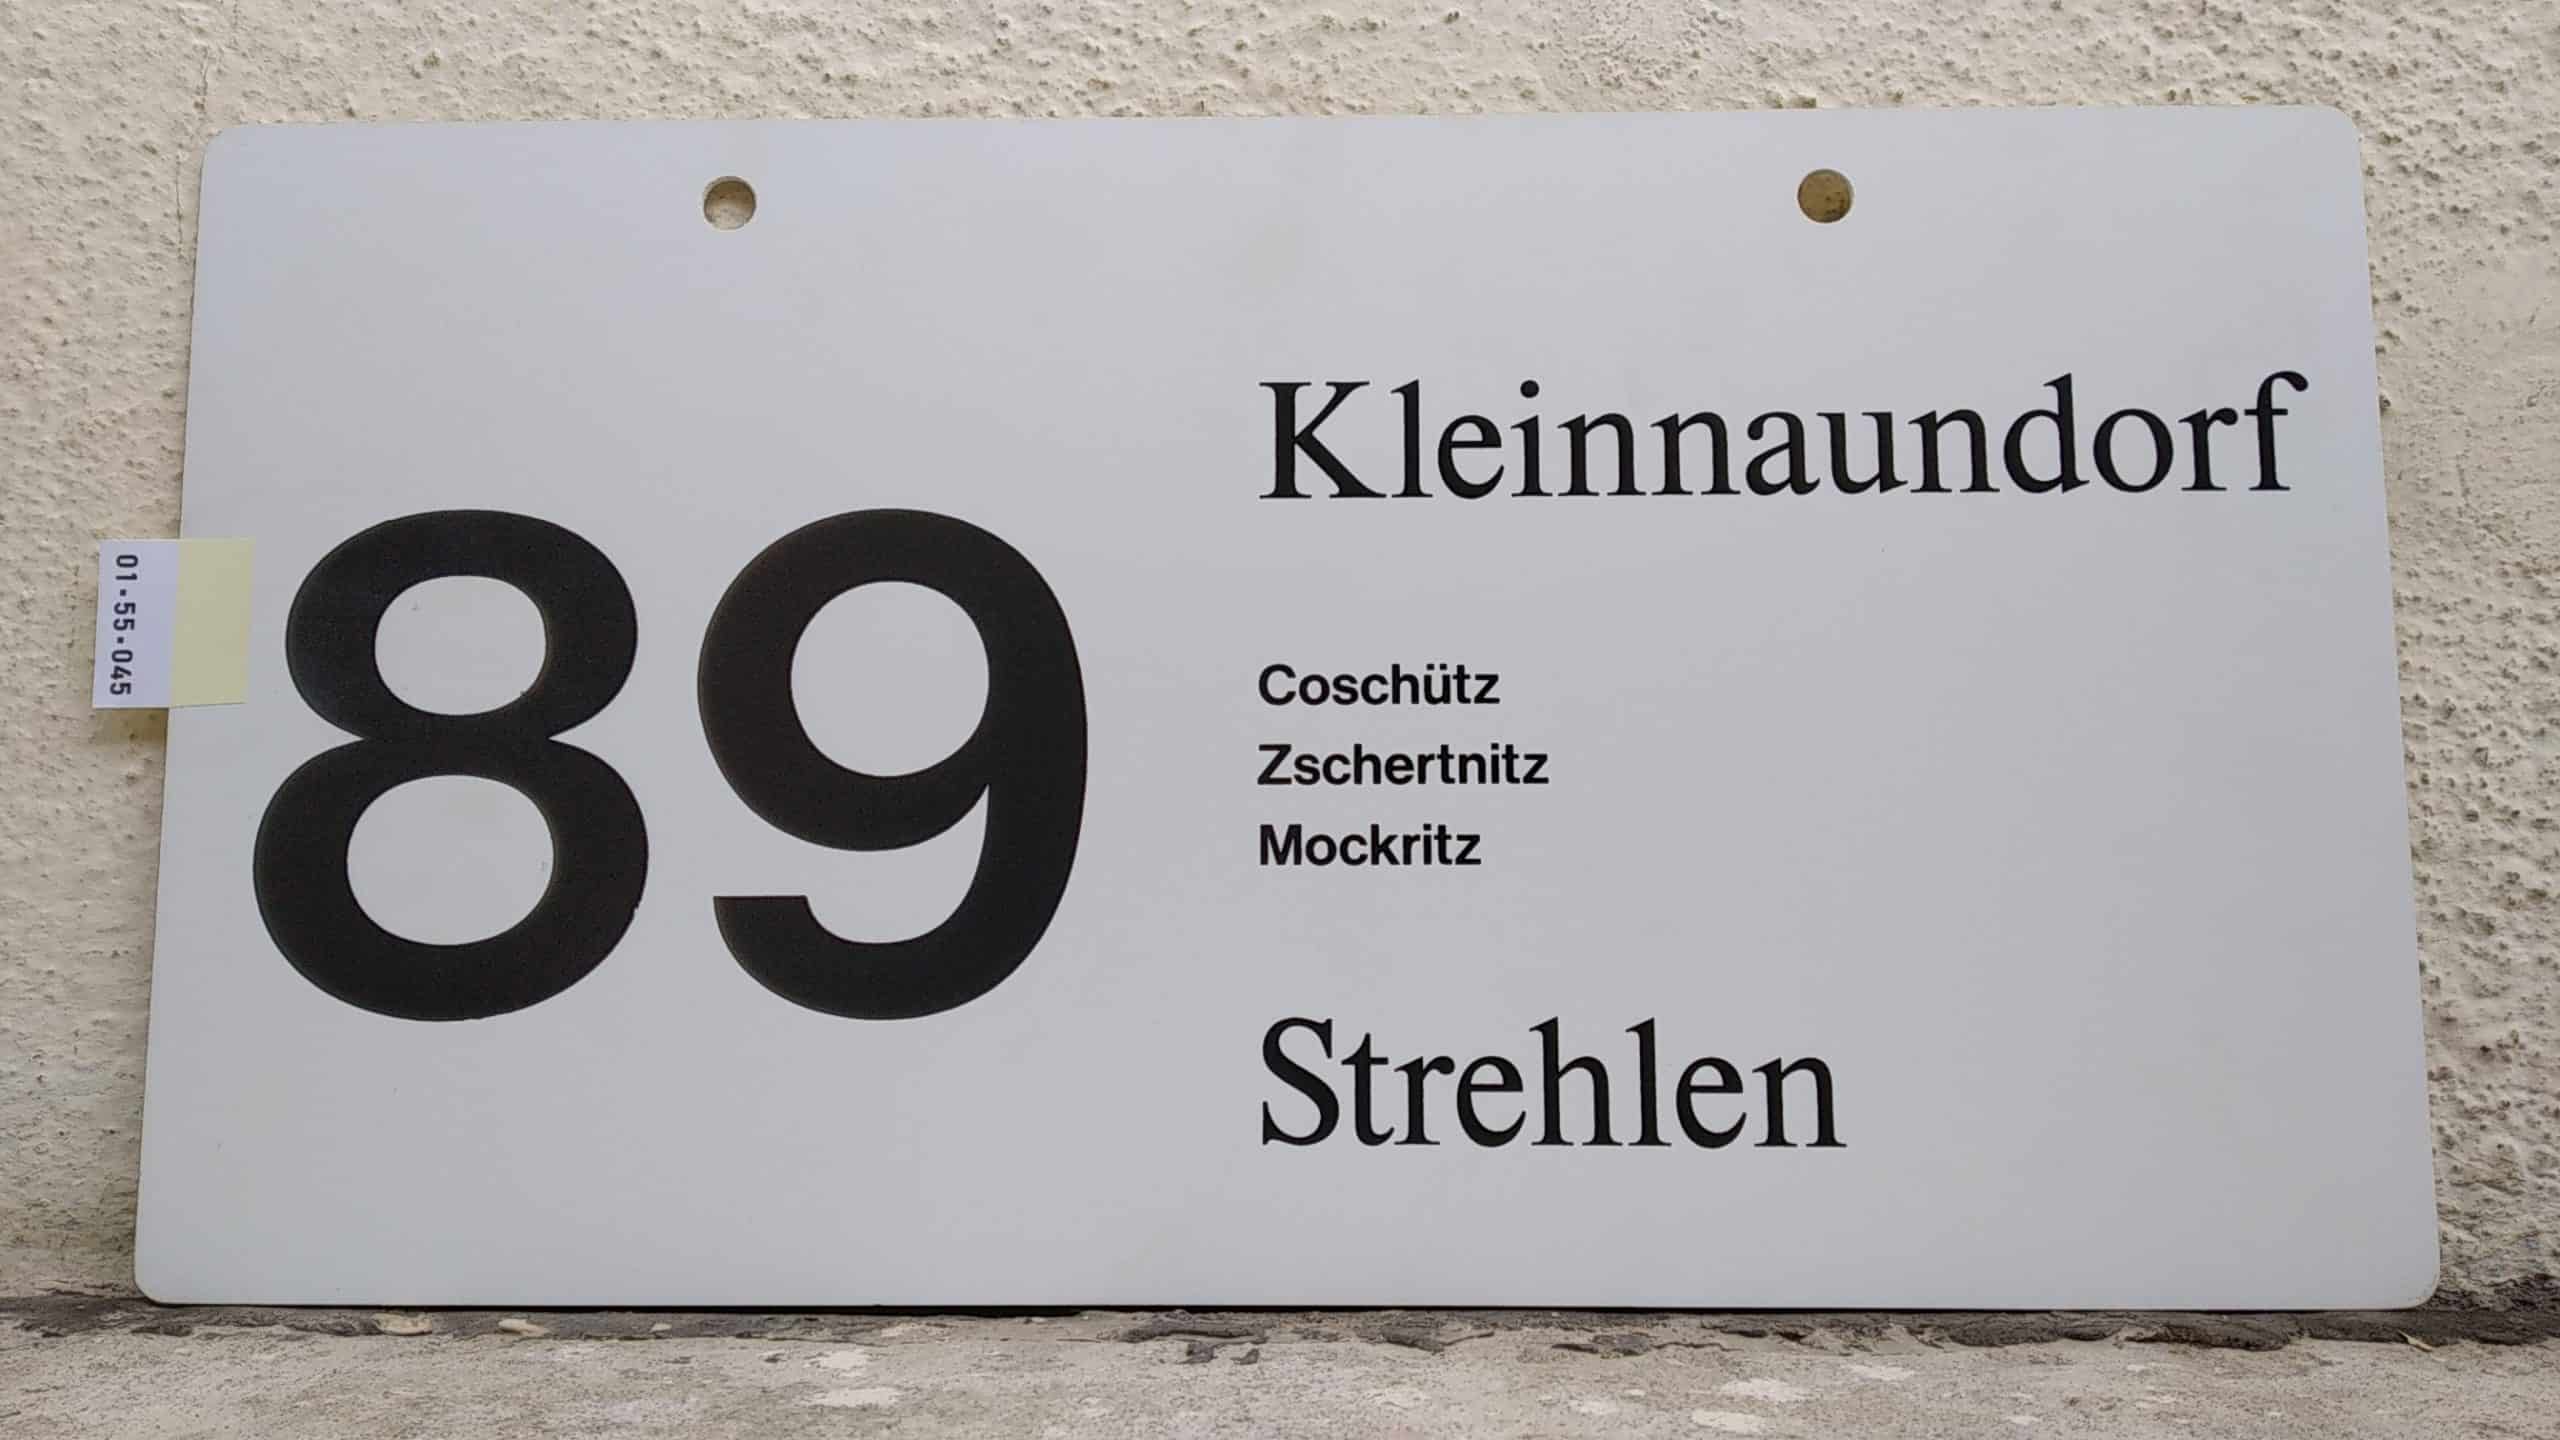 89 Klein­naun­dorf – Strehlen